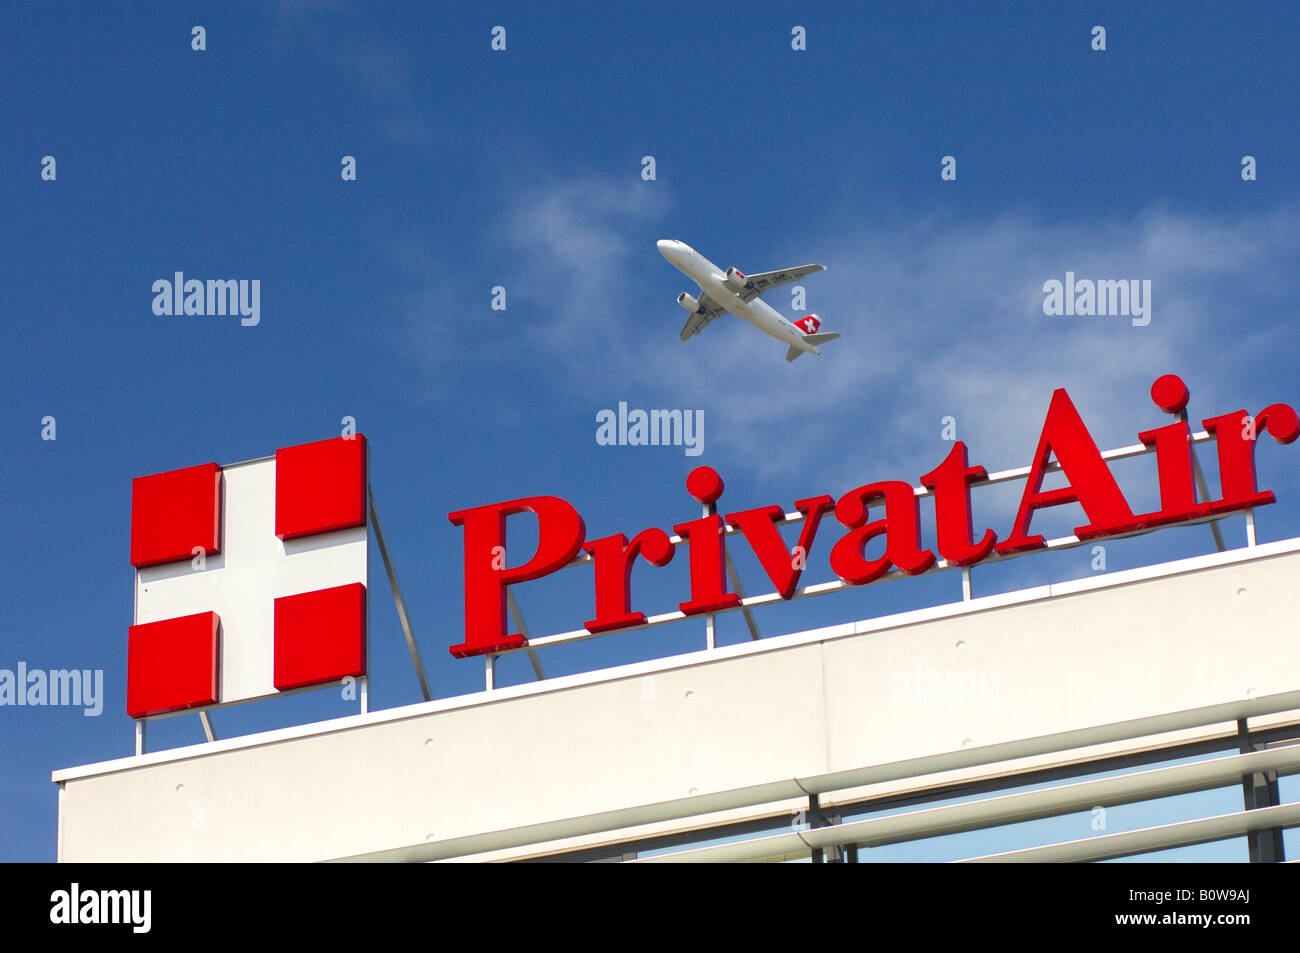 Avion volant au-dessus du siège de la compagnie aérienne PrivatAir, Genève, Suisse, Europe Banque D'Images